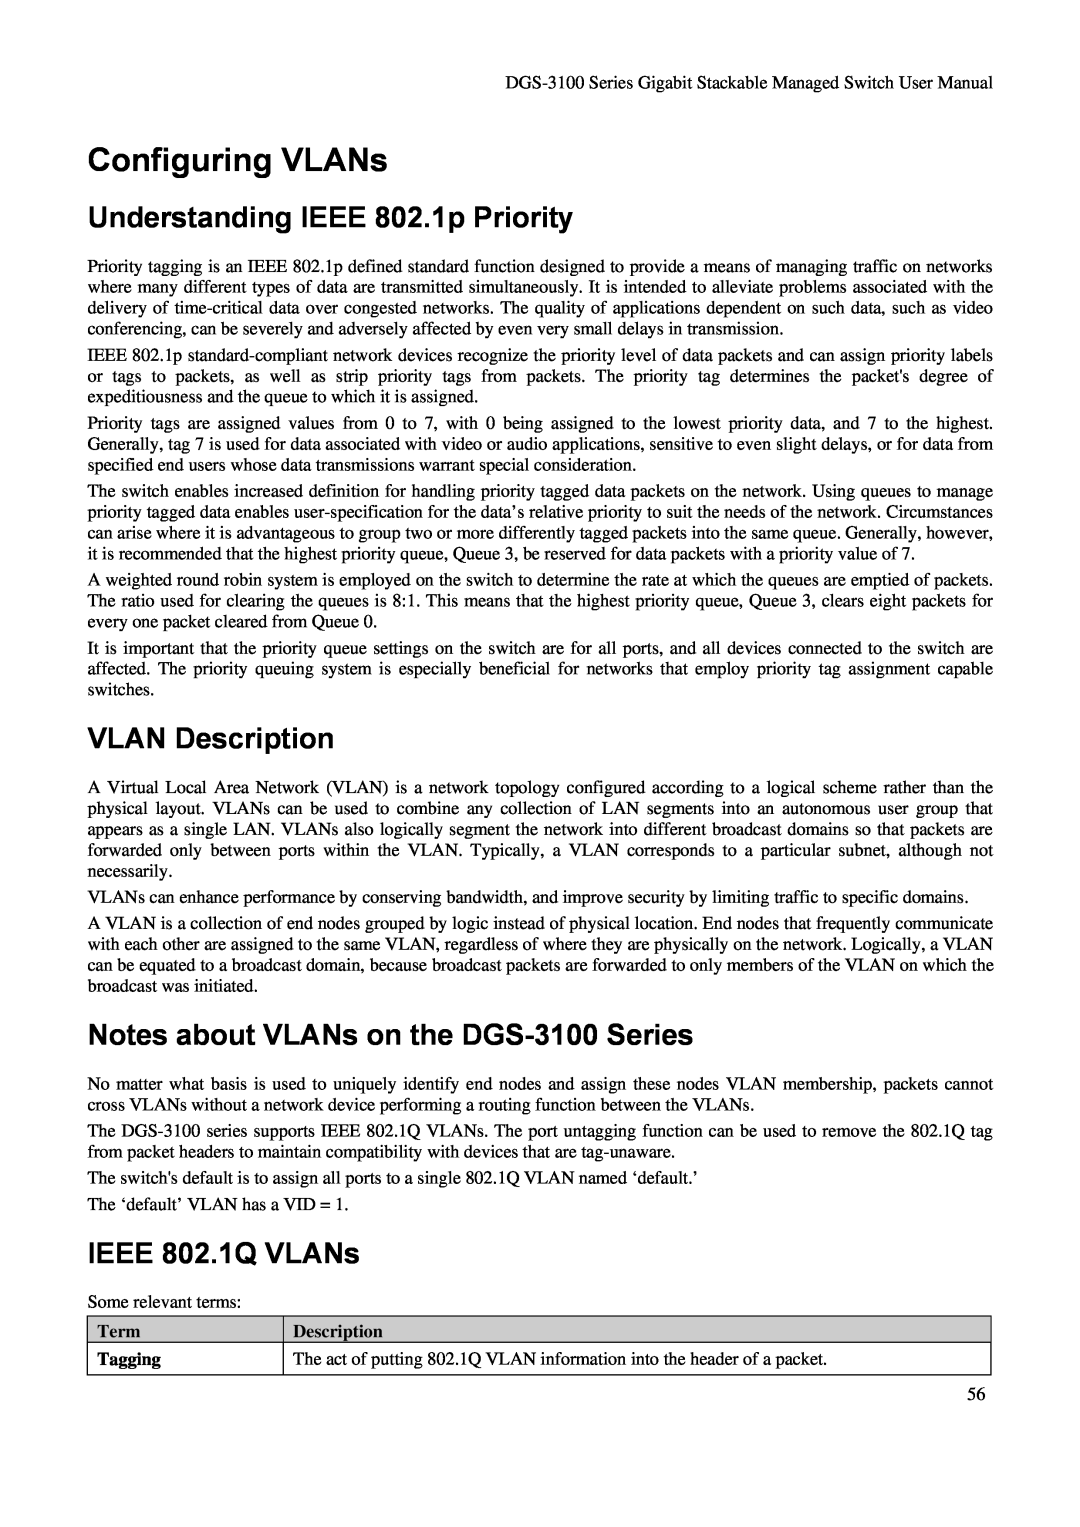 D-Link DGS-3100 Configuring VLANs, Understanding IEEE 802.1p Priority, VLAN Description, IEEE 802.1Q VLANs, Term Tagging 